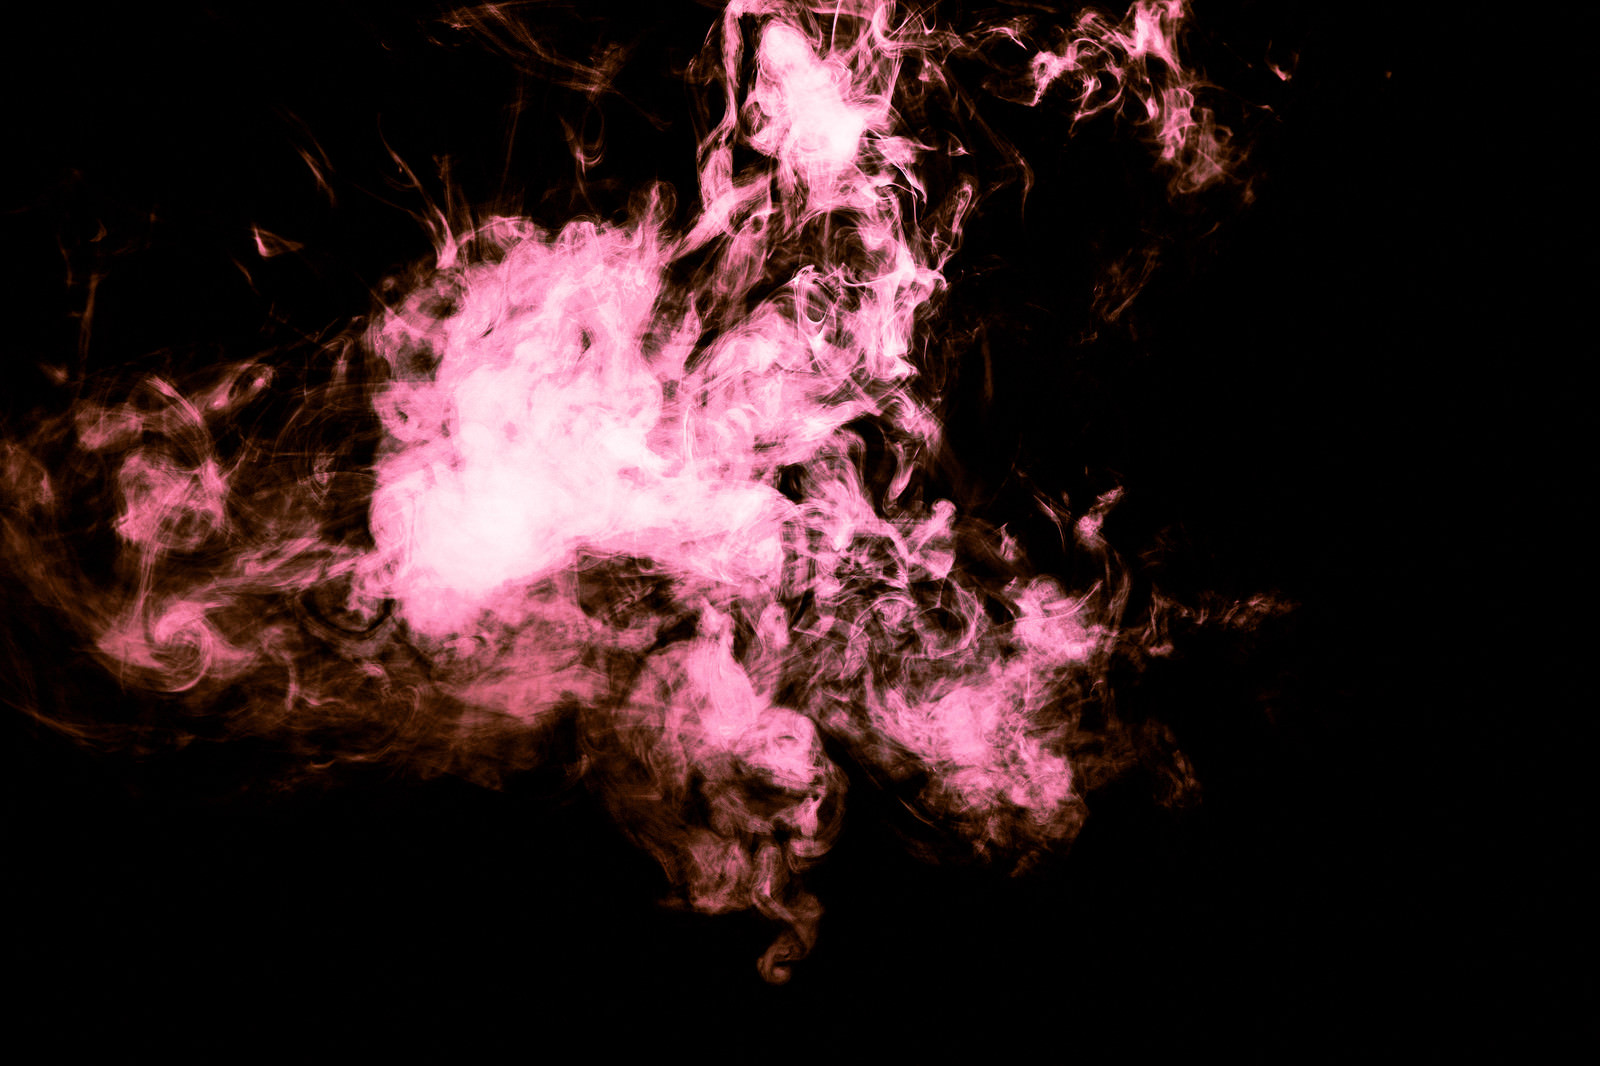 「赤い炎のような煙 | フリー素材のぱくたそ」の写真